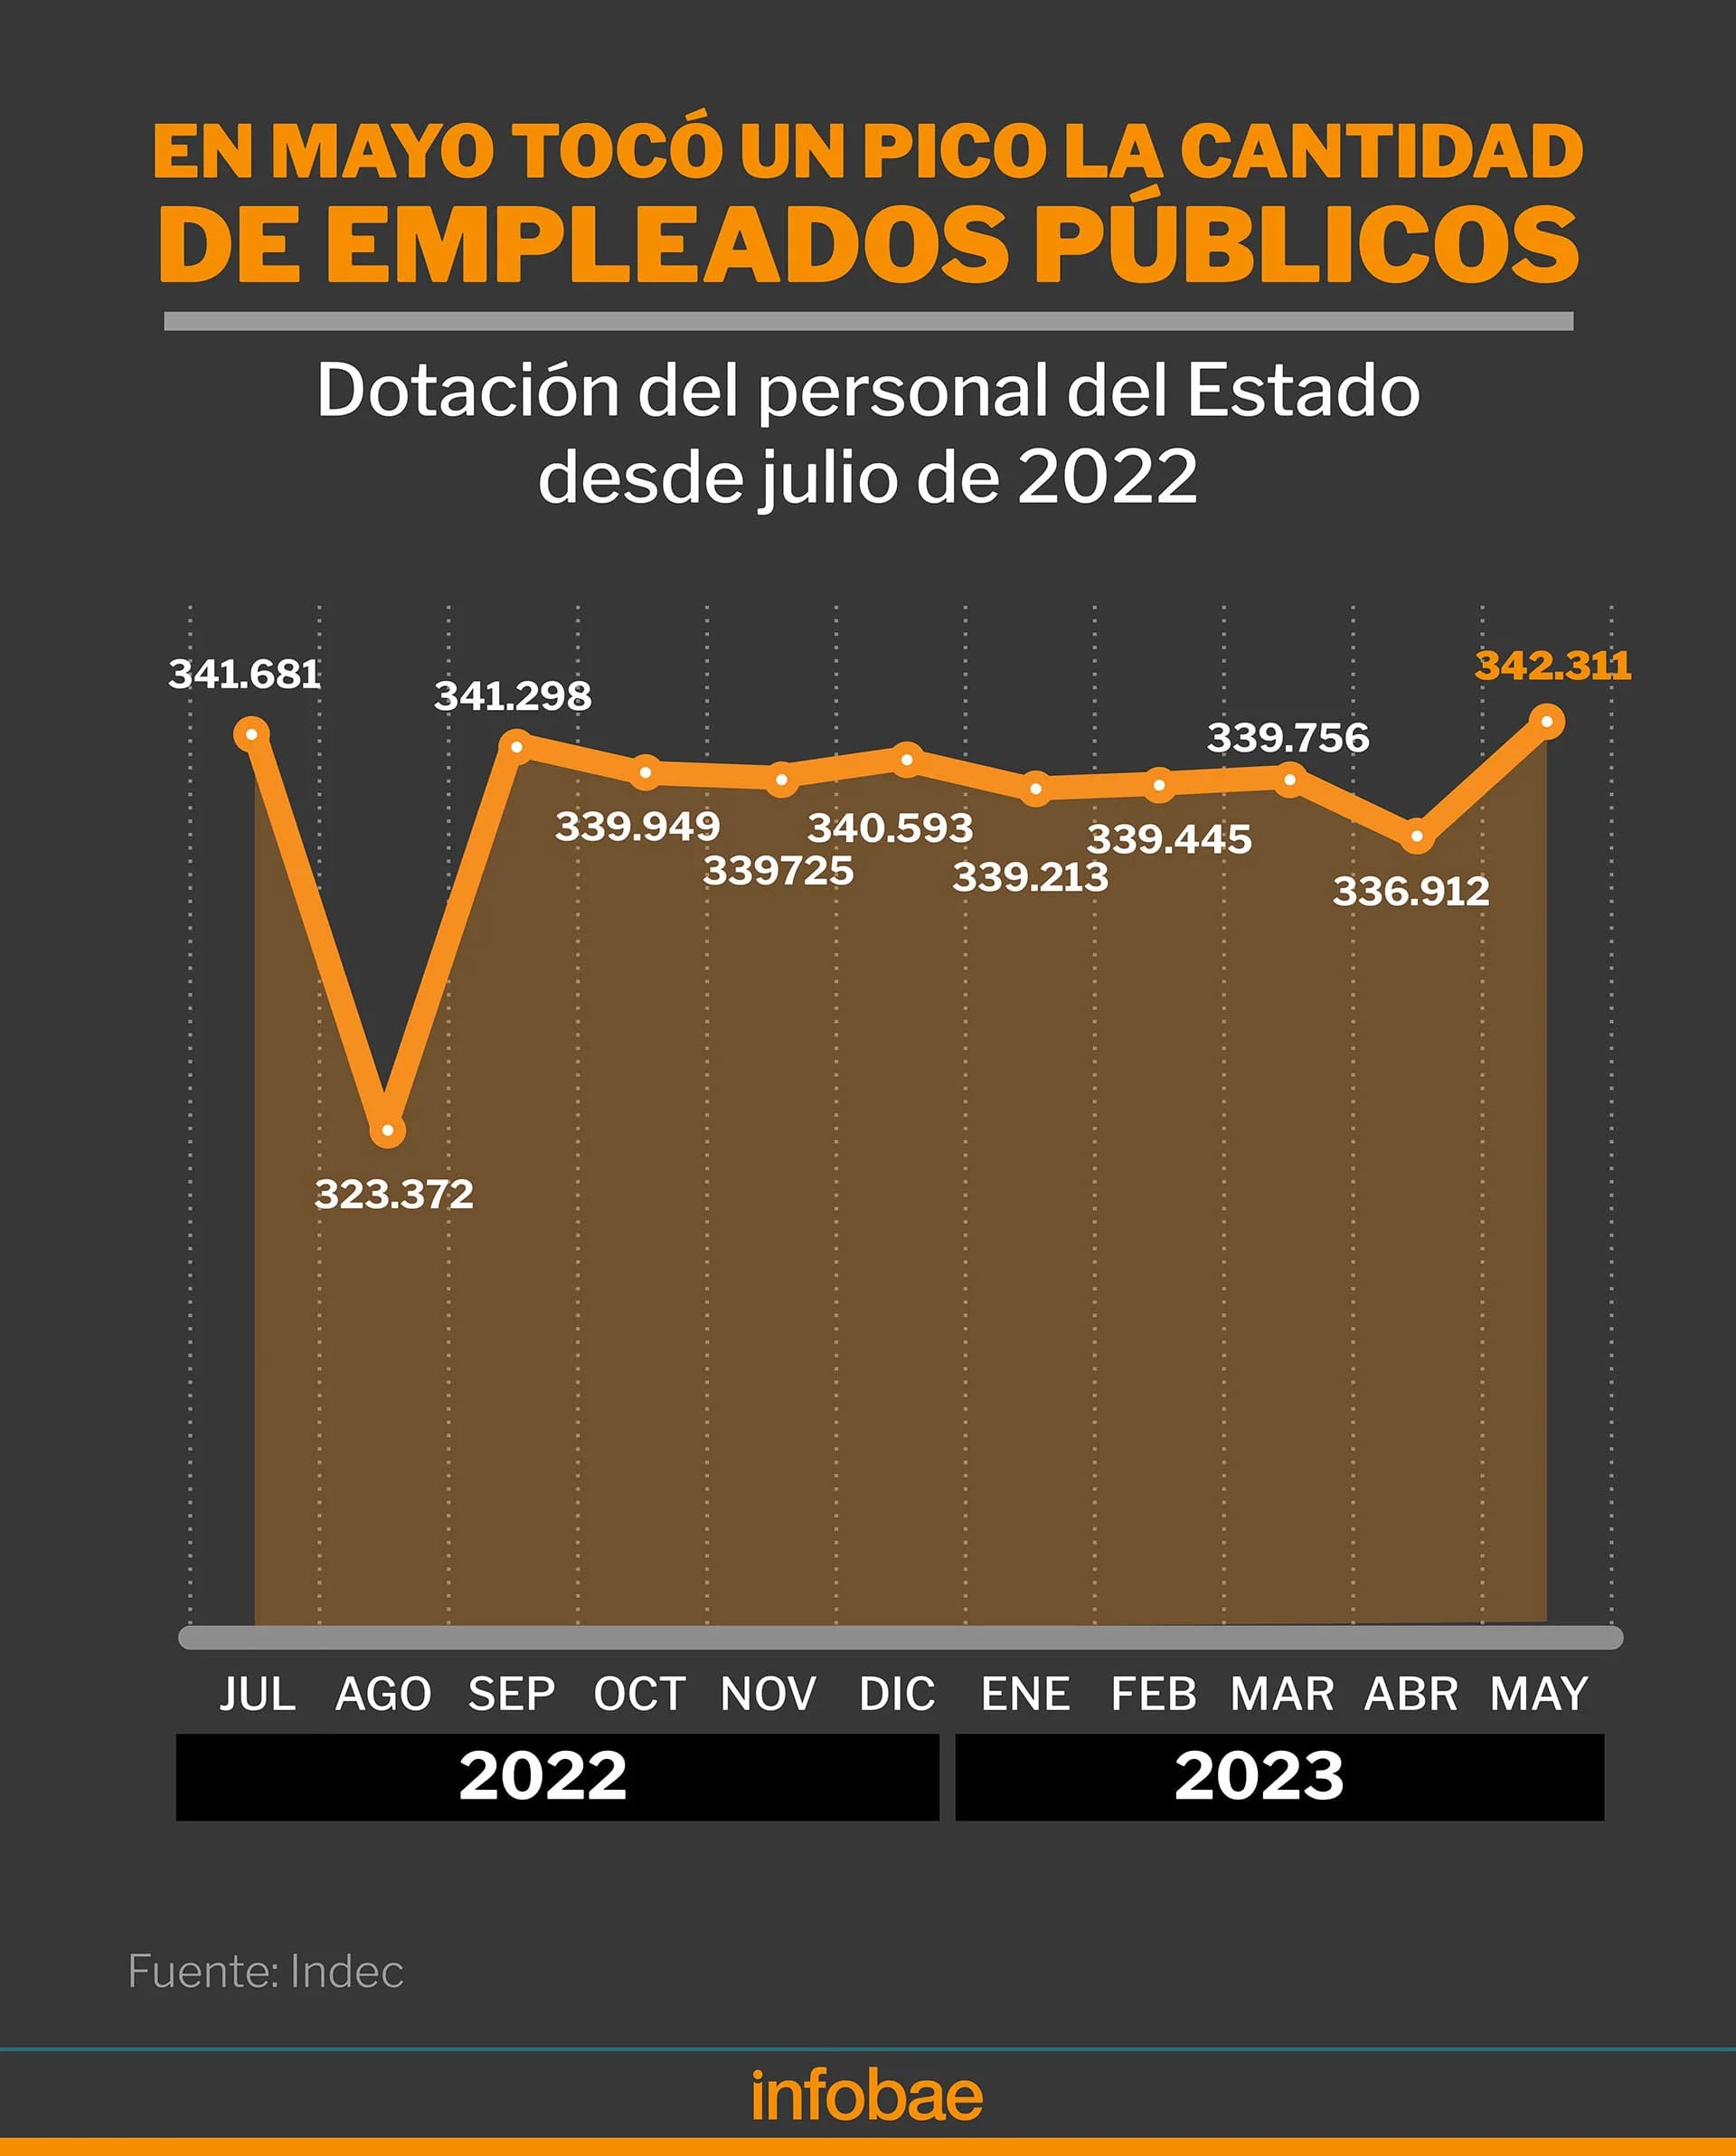 Evolución de la cantidad de Empleados públicos nacionales
Infografía de Marcelo Regalado en base a informe del Indec